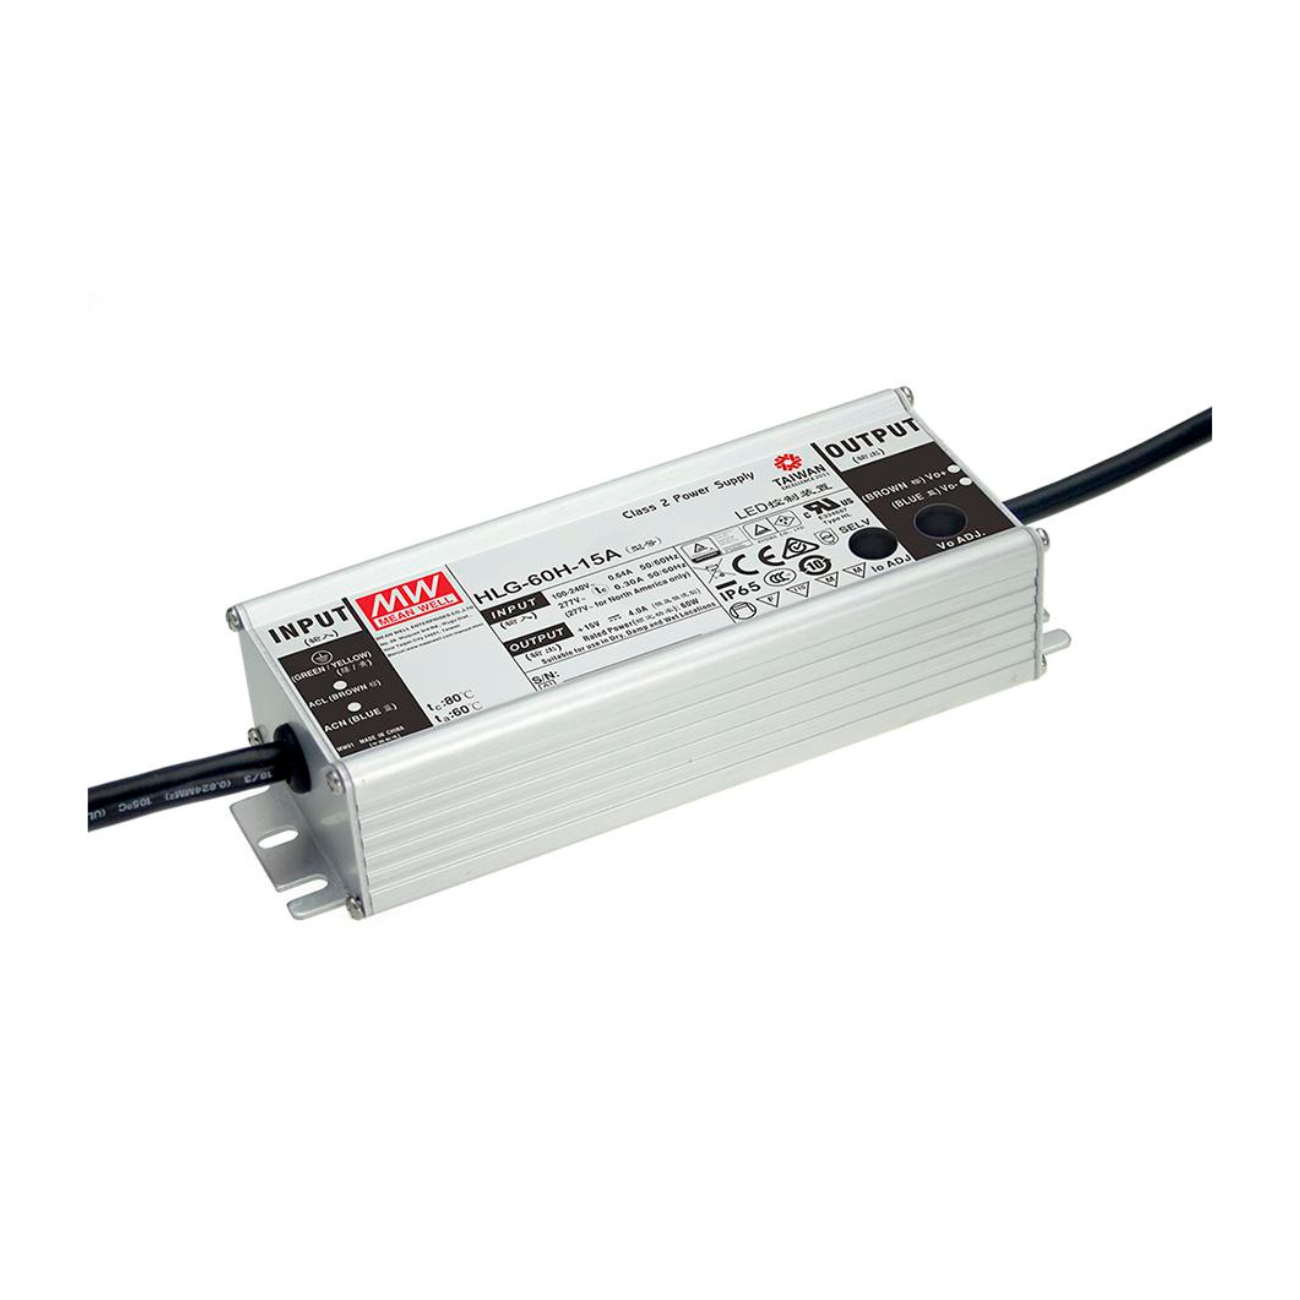 MeanWell HLG-60H-36 (61,2W/36V) LED-Netzteil